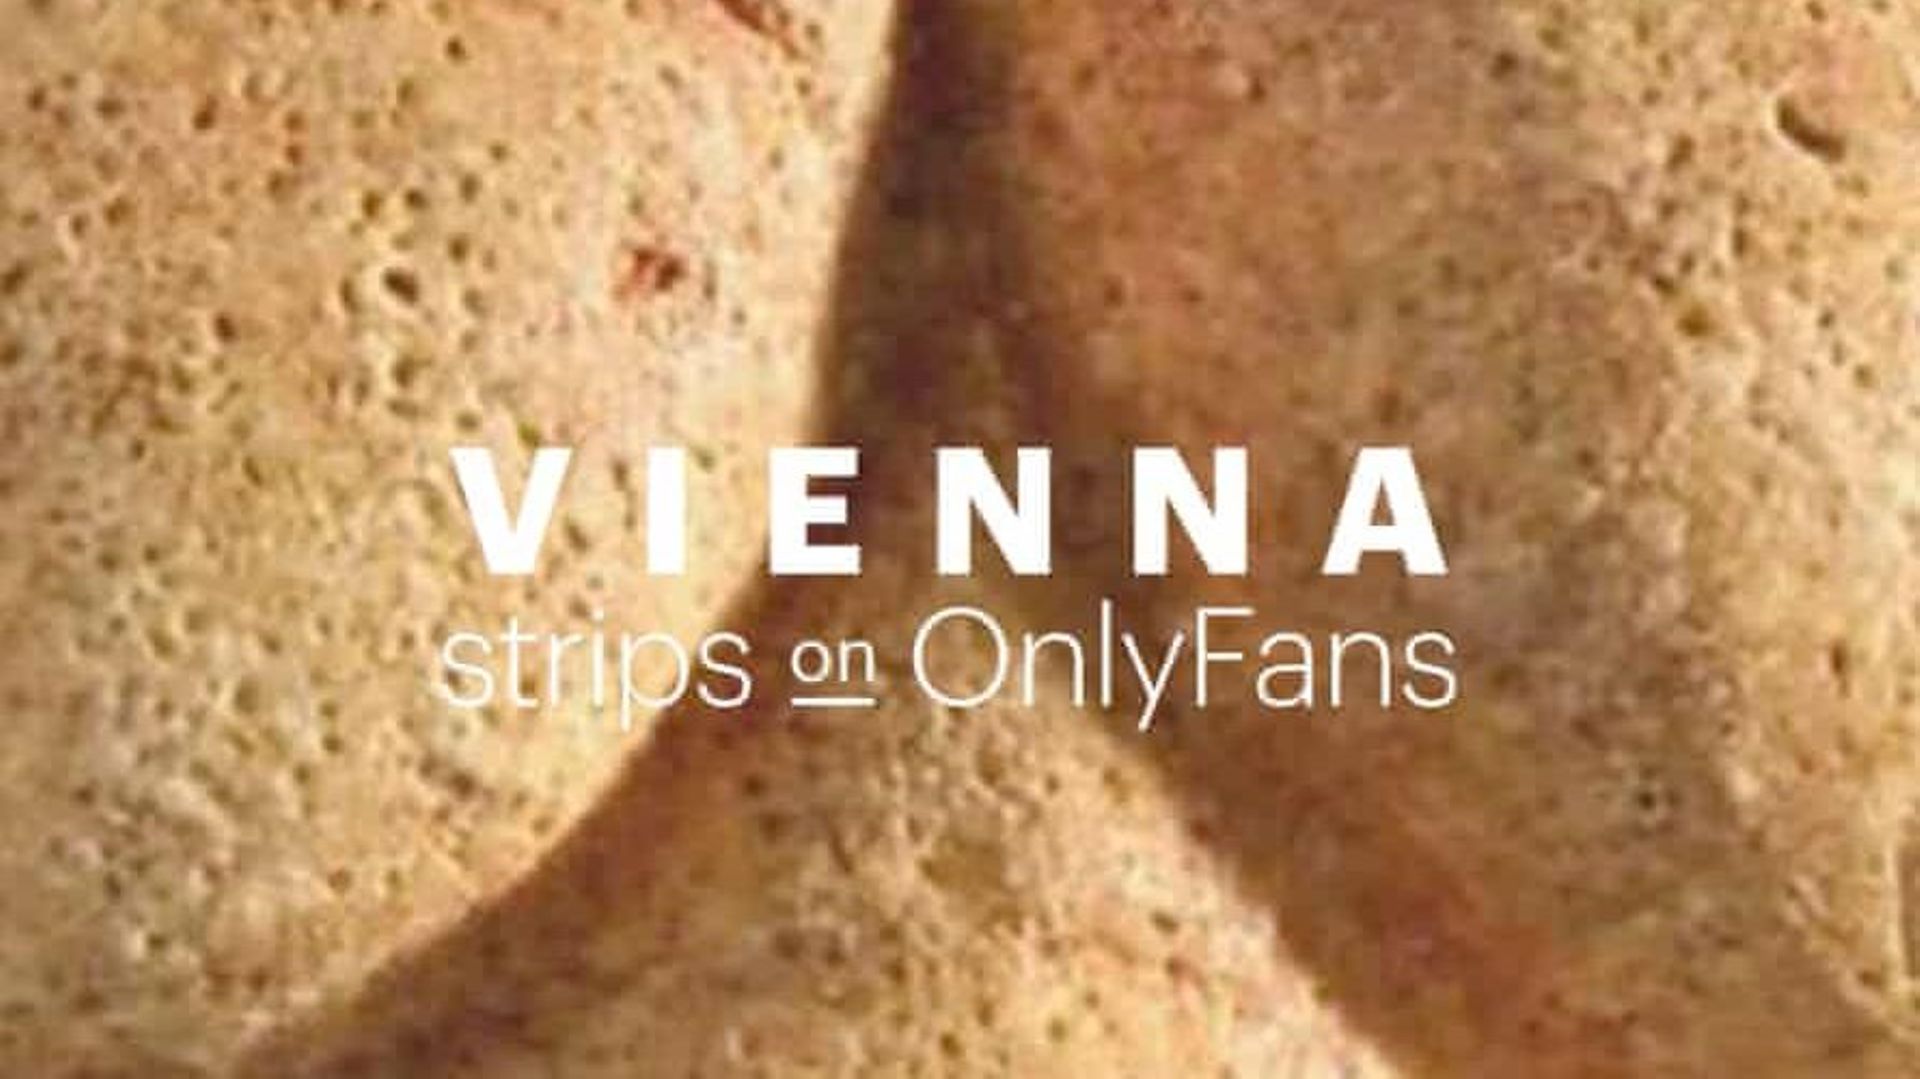 Les musées d’art de Vienne débarquent sur "OnlyFans" pour y poster des photos d’œuvres d’art censurées sur les réseaux sociaux traditionnels